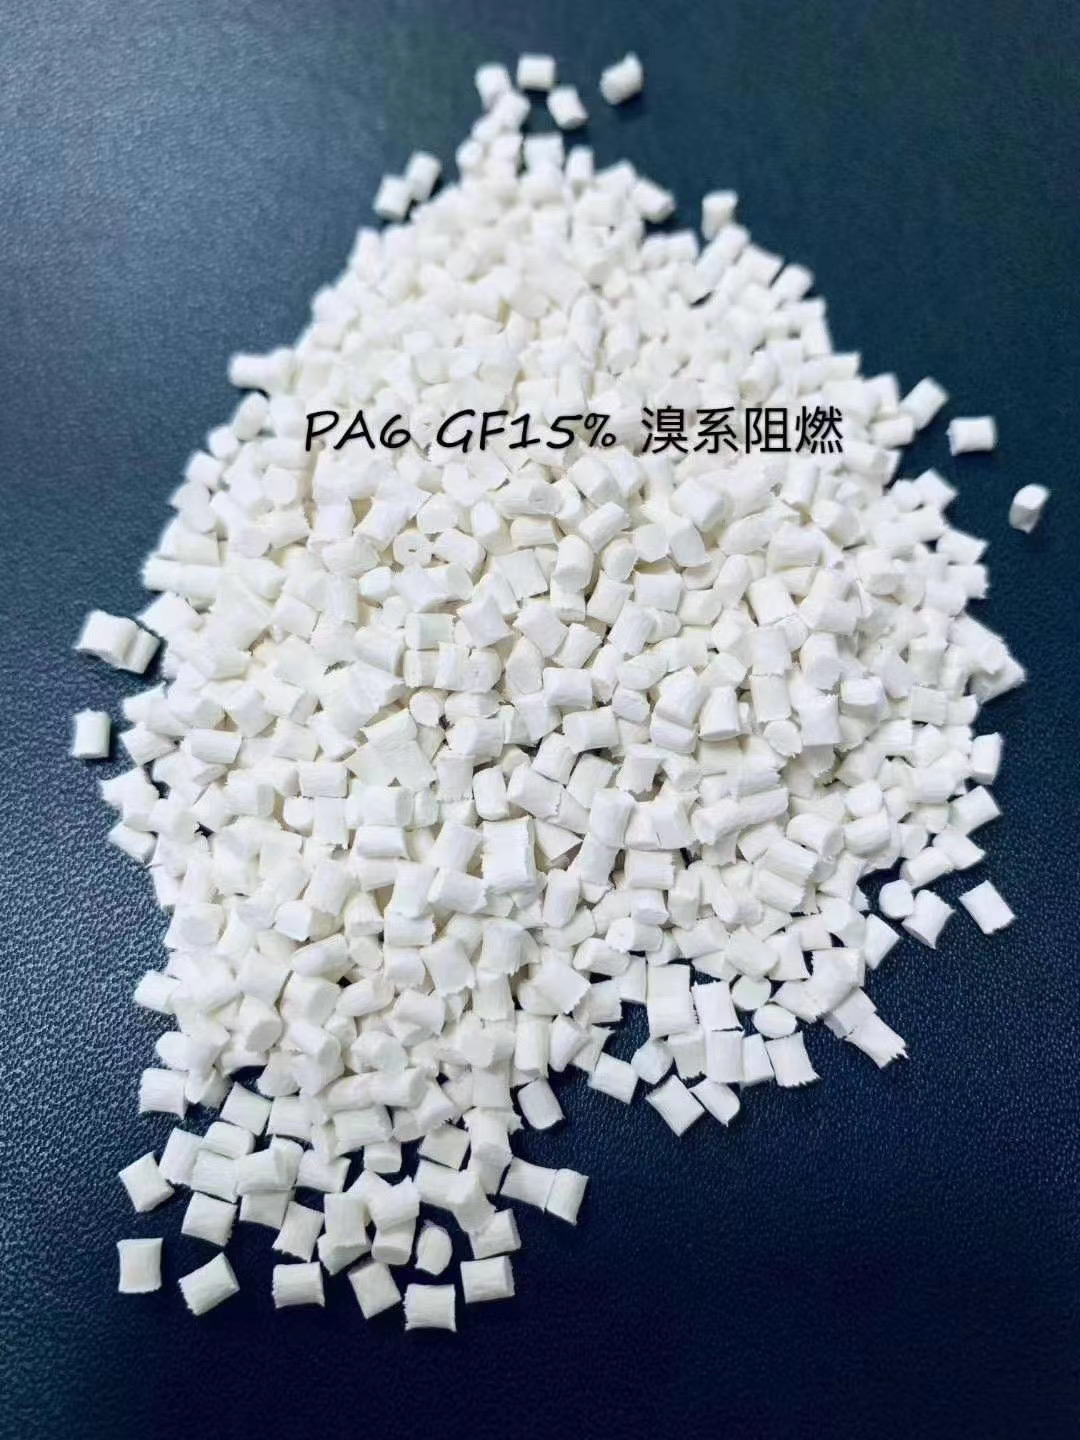 PC聚碳酸酯批發 江西聚碳酸酯塑料供應商